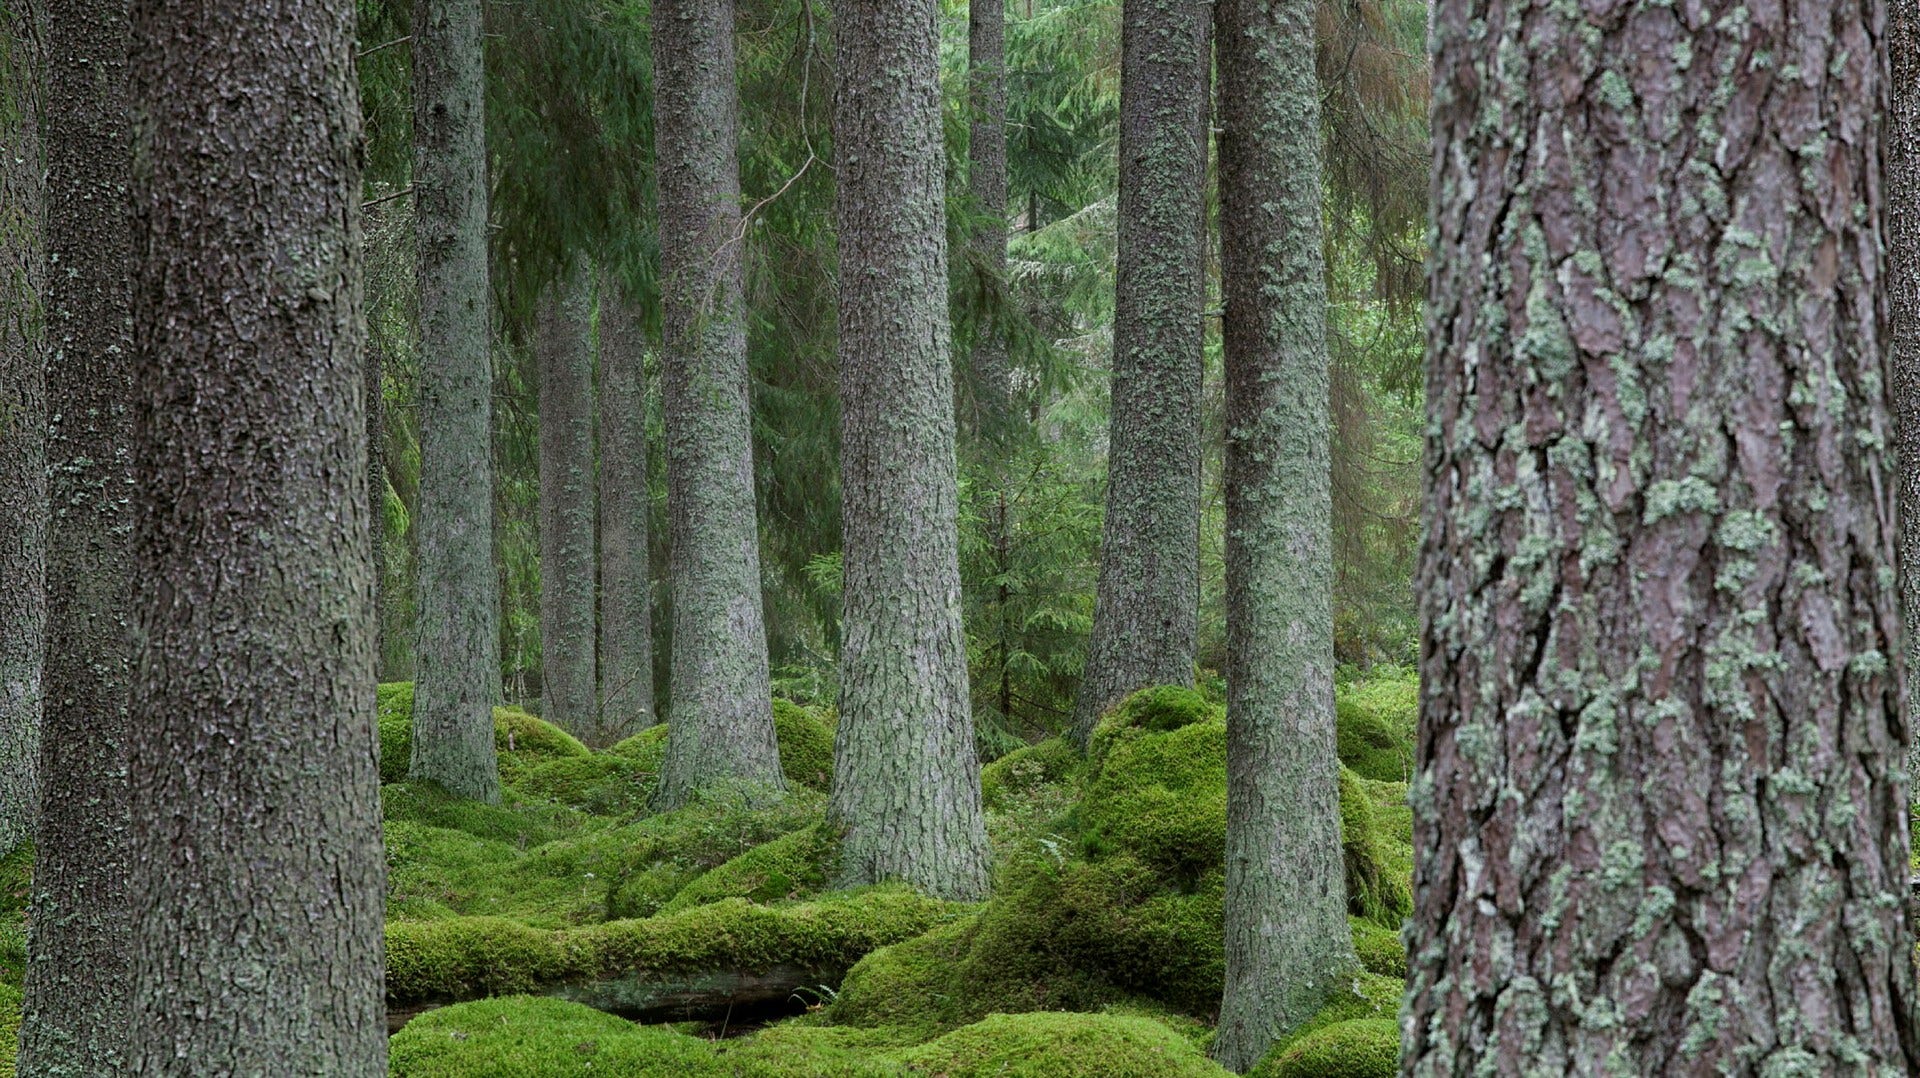 Gammelskog i Värmland. Skogsindustrins logik för kalhyggen gäller bara energiskog, menar insändarskribenten.